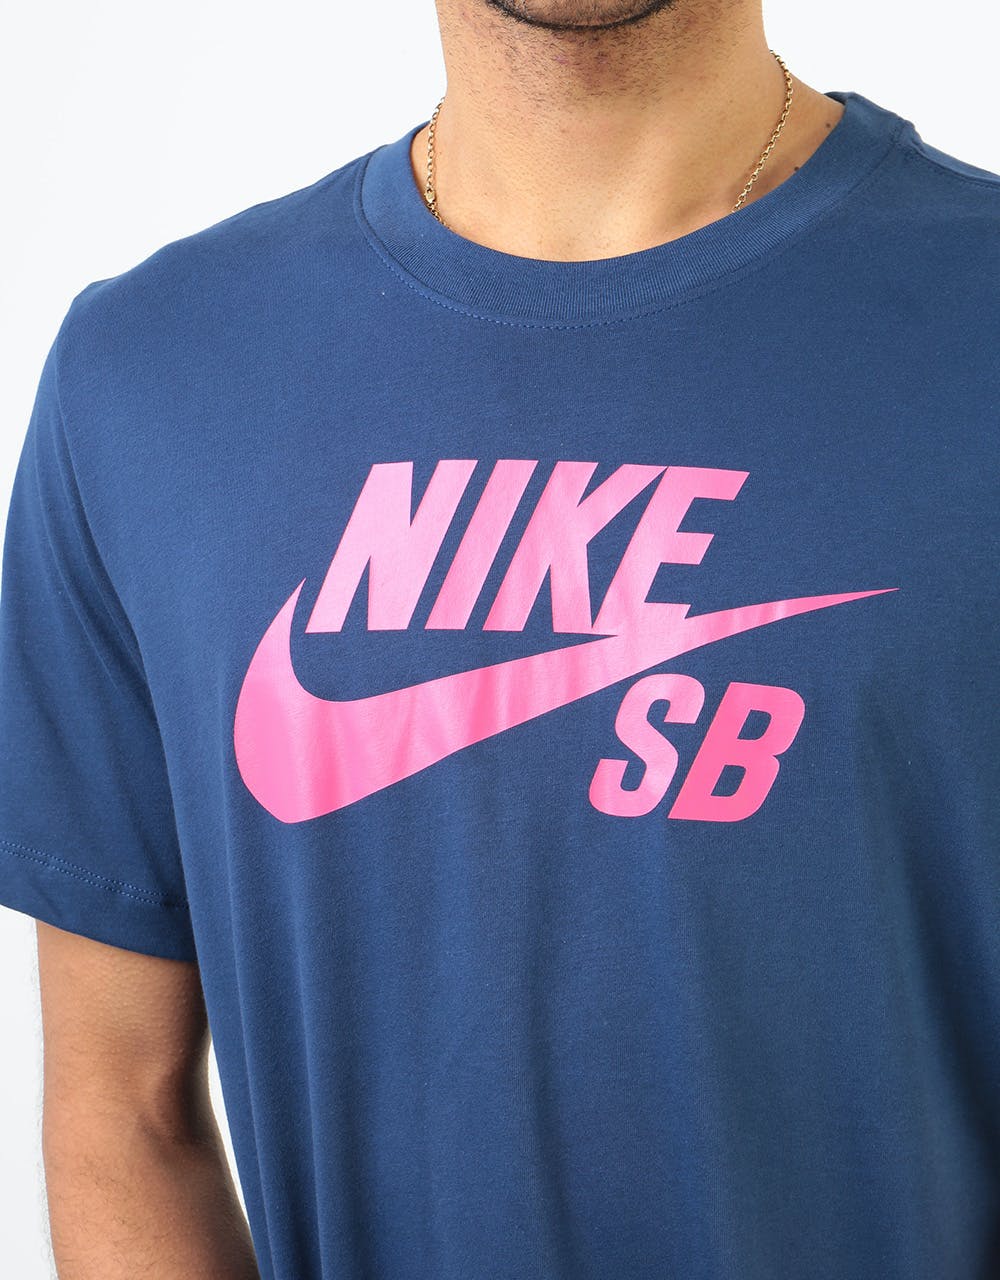 Nike SB Logo Dri-Fit T-Shirt - Midnight Navy/Watermelon